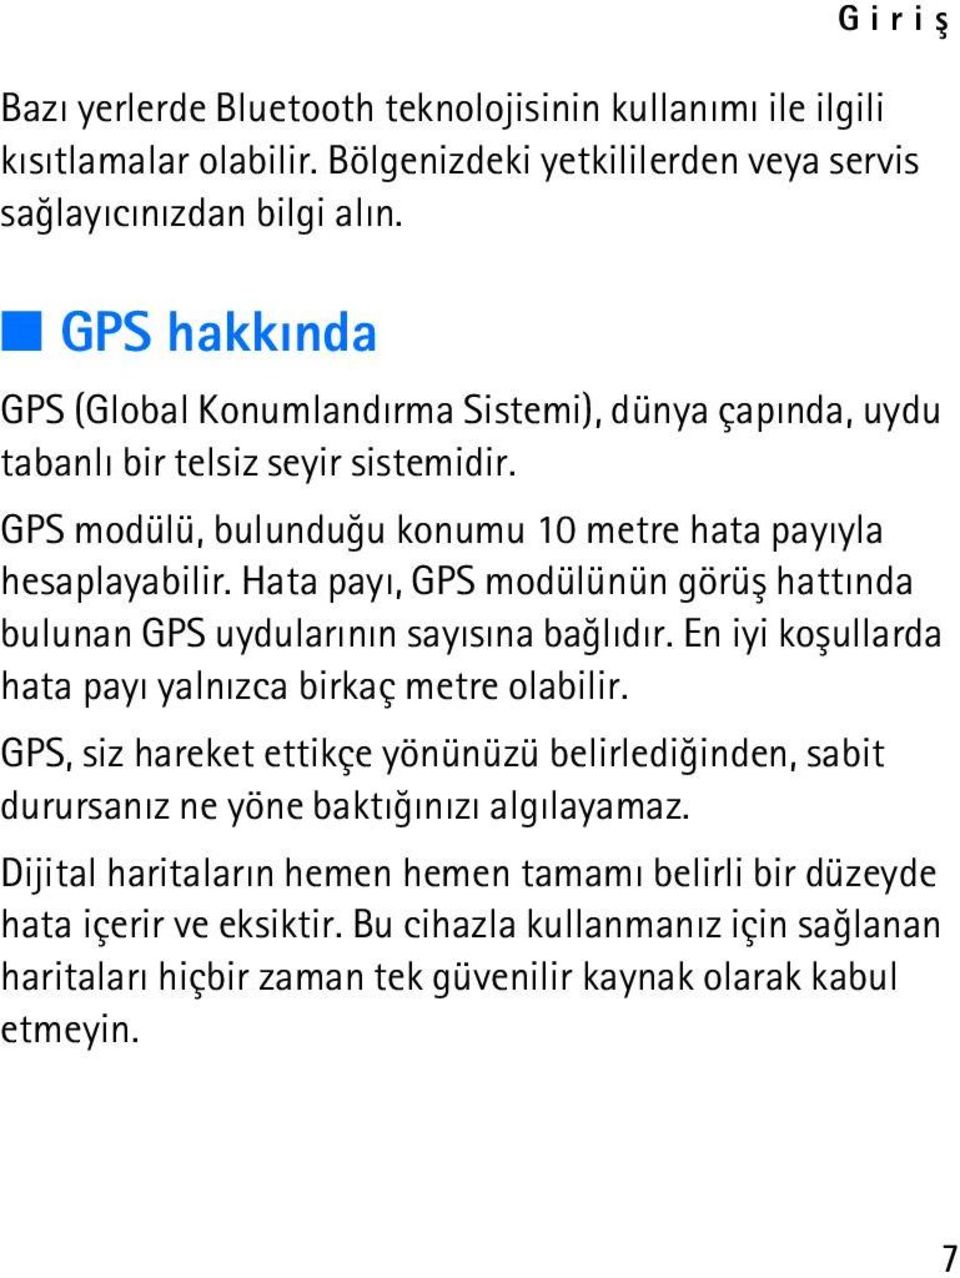 Hata payý, GPS modülünün görüþ hattýnda bulunan GPS uydularýnýn sayýsýna baðlýdýr. En iyi koþullarda hata payý yalnýzca birkaç metre olabilir.